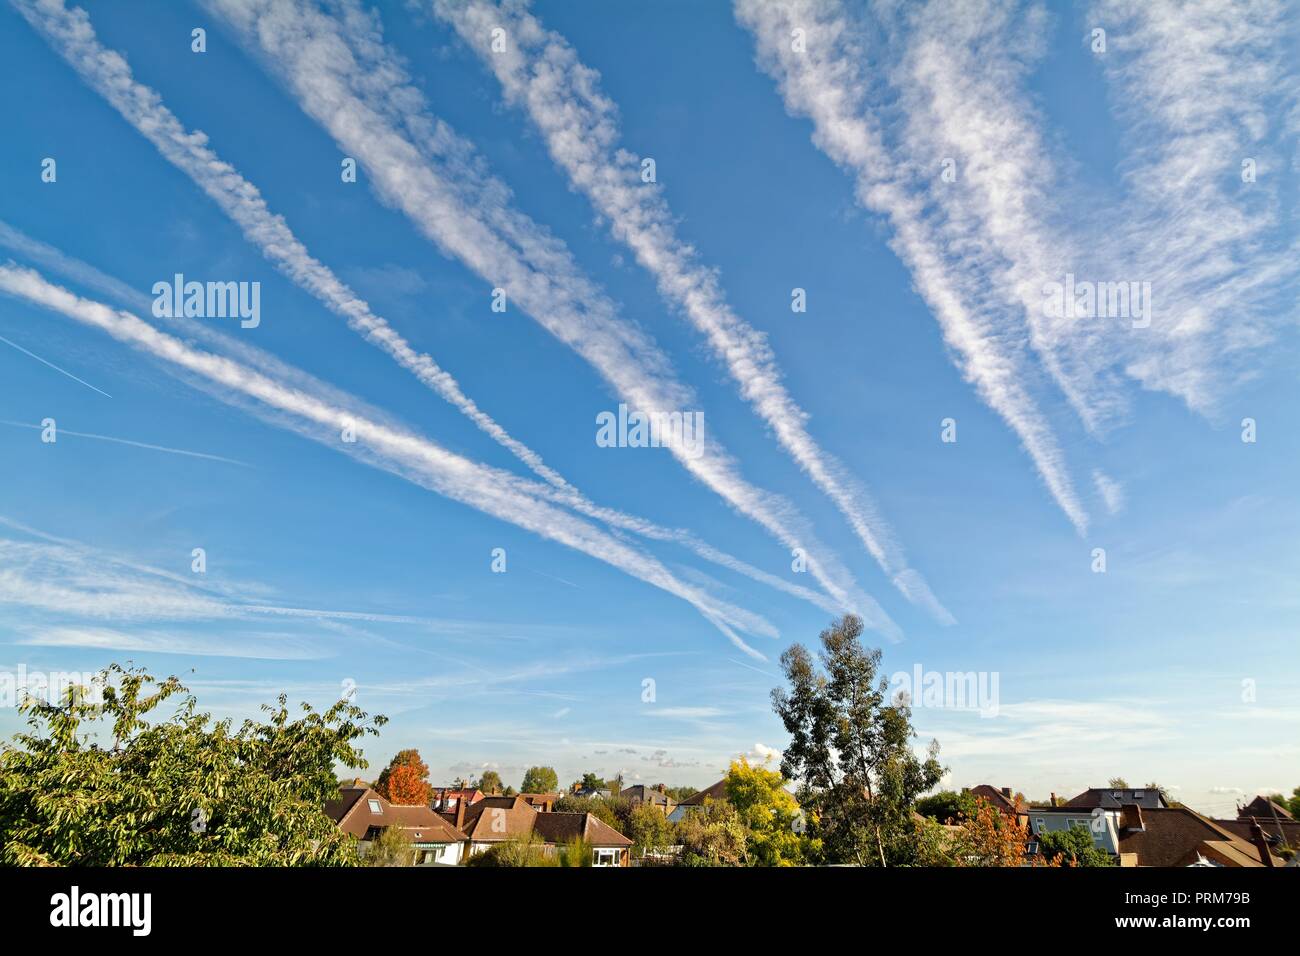 Receding aircraft contrails  against a blue sky Surrey England UK Stock Photo